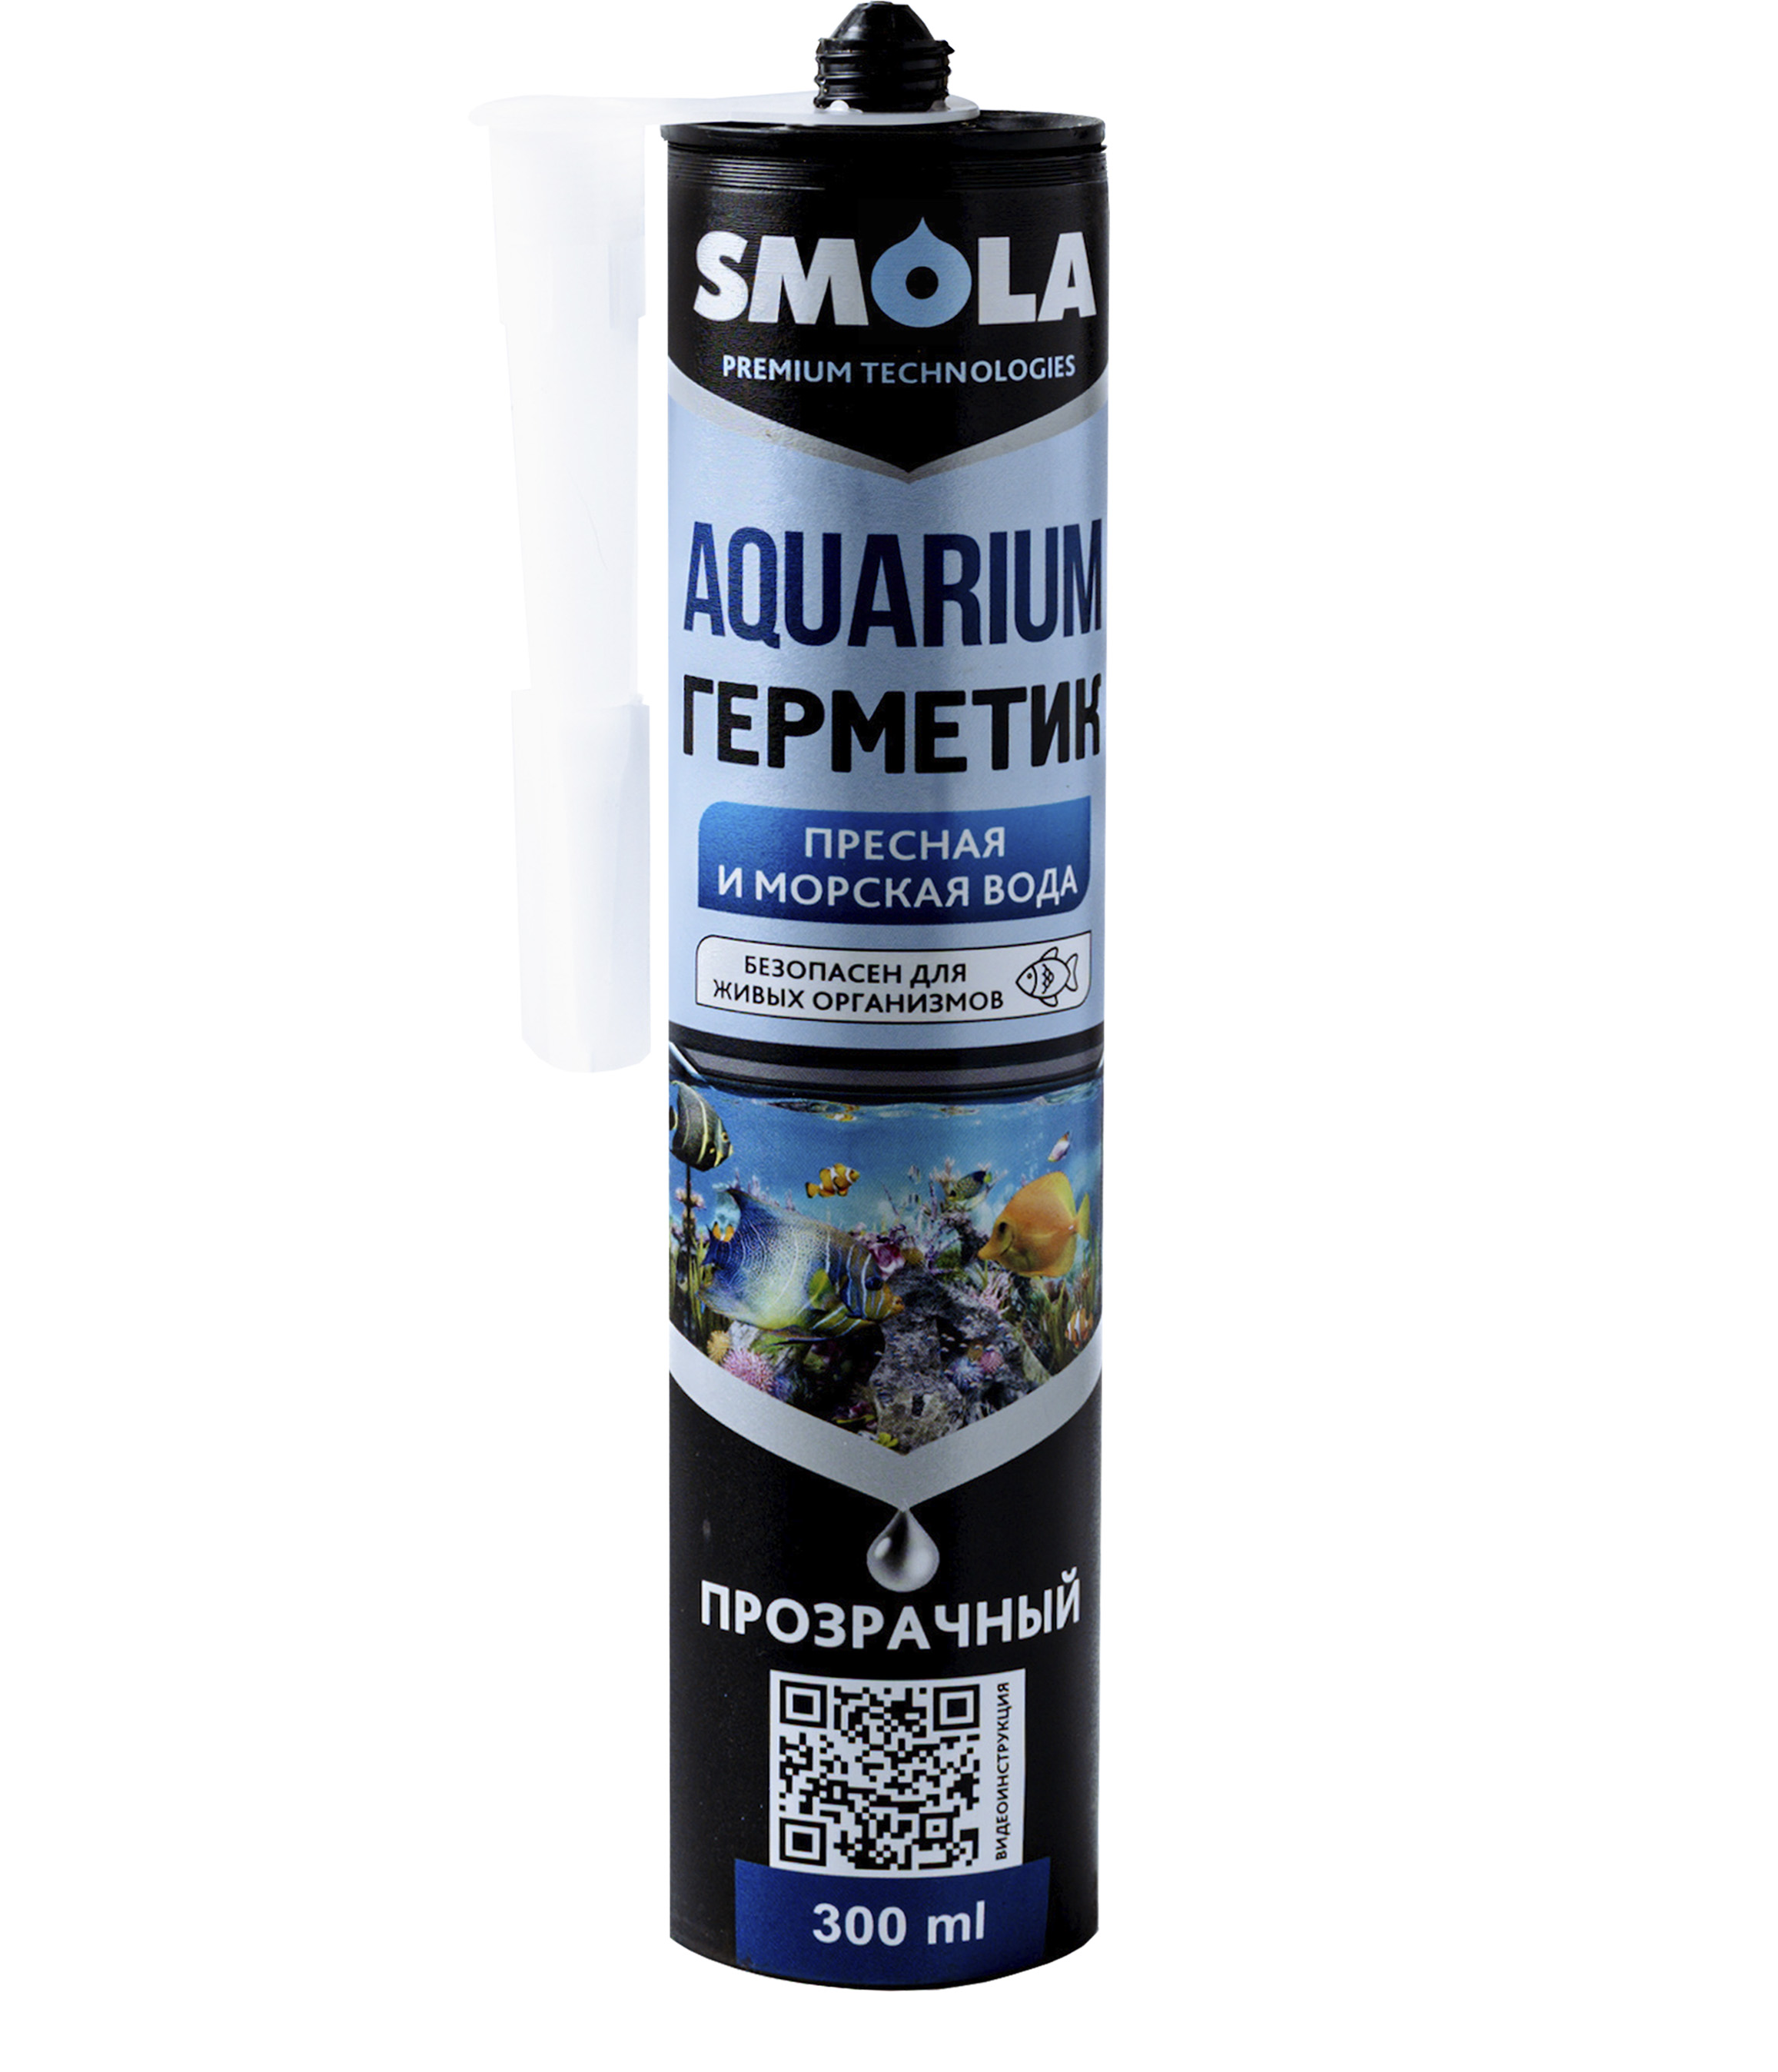 Герметик Smola Aquarium аквариумный, прозрачный, 300 мл jbl aquarium thermometer slim тонкий стеклянный аквариумный термометр